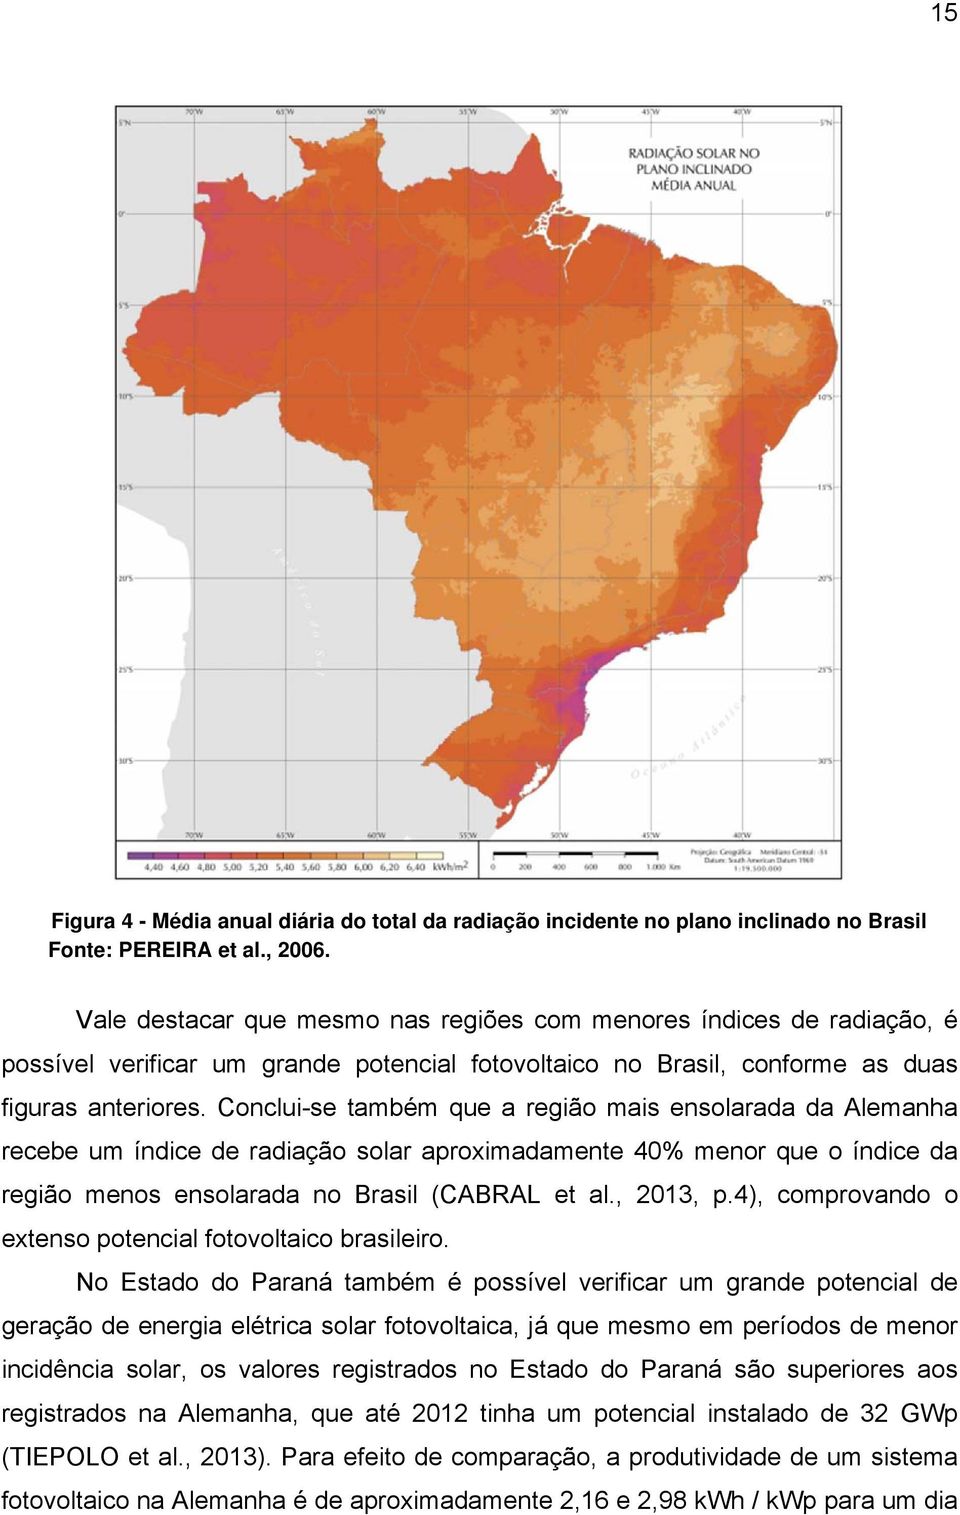 Conclui-se também que a região mais ensolarada da Alemanha recebe um índice de radiação solar aproximadamente 40% menor que o índice da região menos ensolarada no Brasil (CABRAL et al., 2013, p.